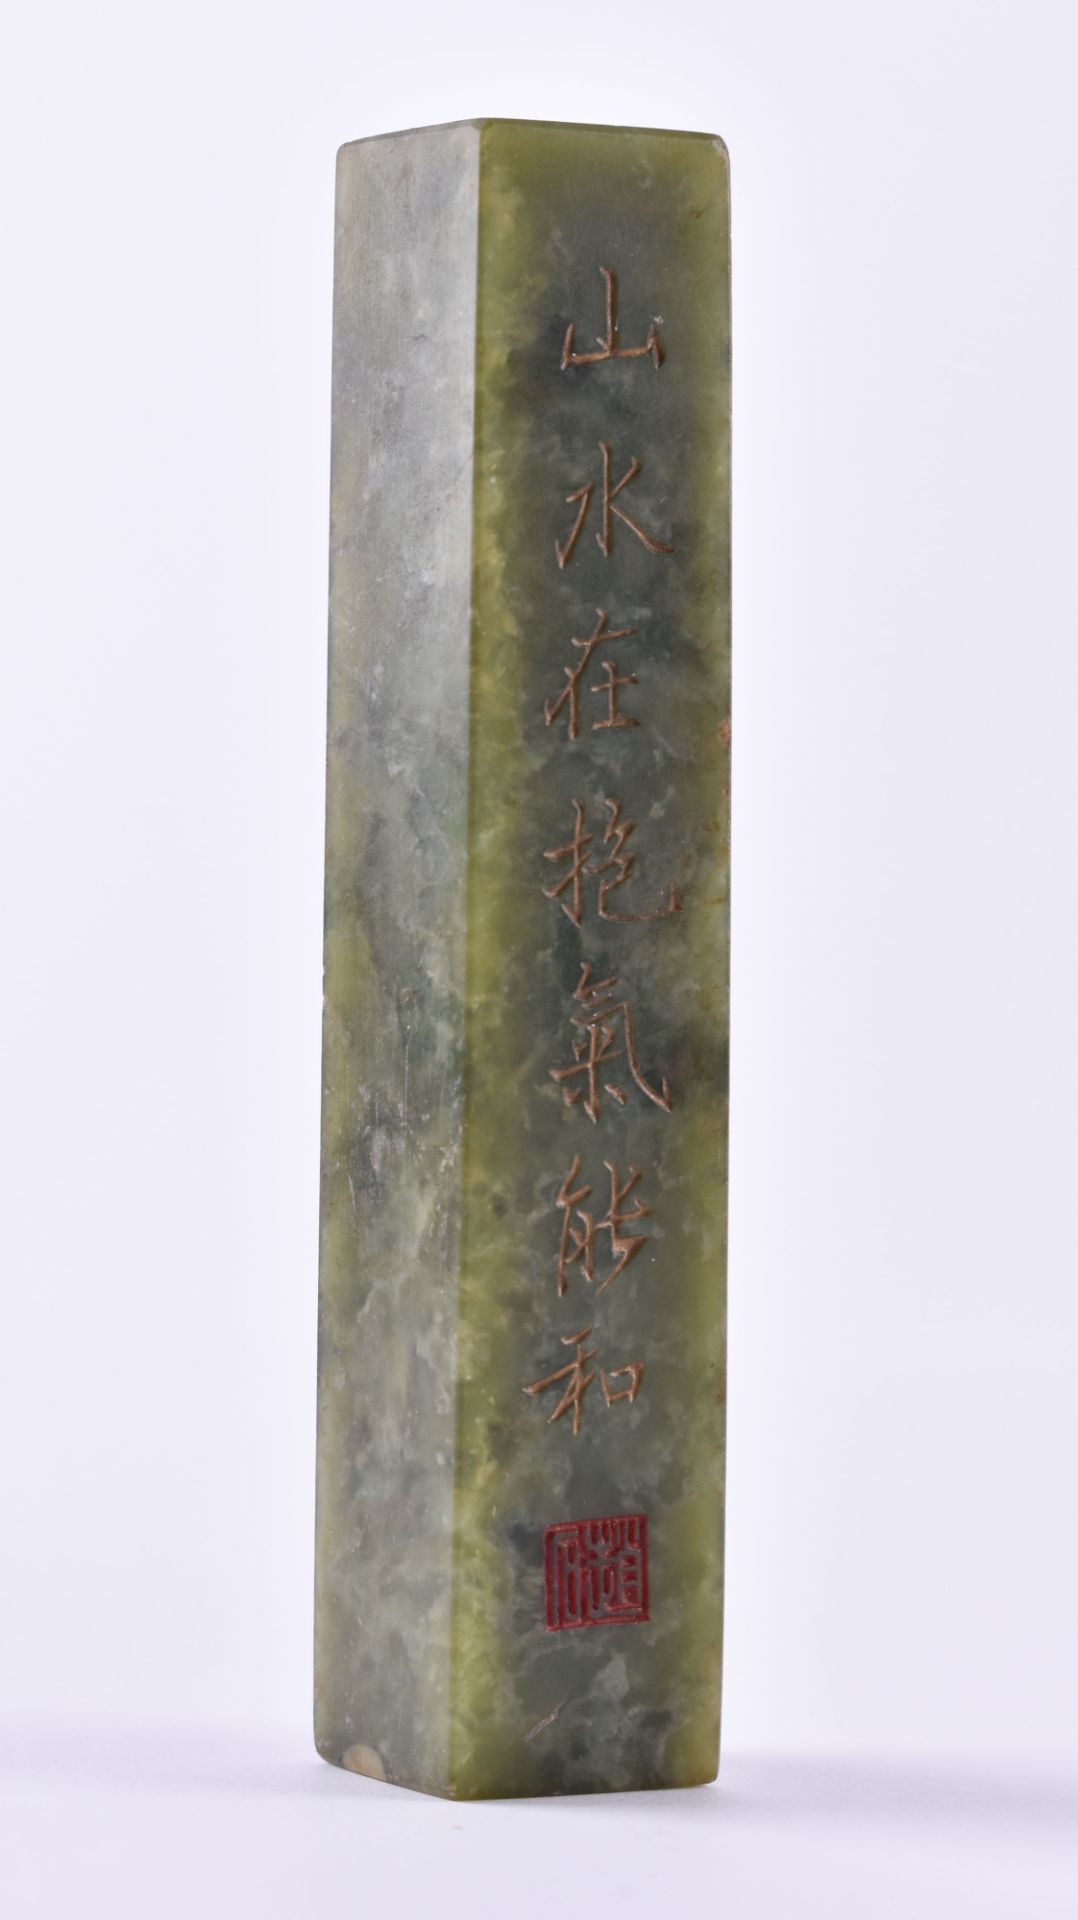 Jade PapiergewichtPapiergewicht Jadeit, Maße: 12,5 cm x 2,6 cm x 2,1 cm, Gewicht: 169,6 g, mit - Bild 2 aus 4